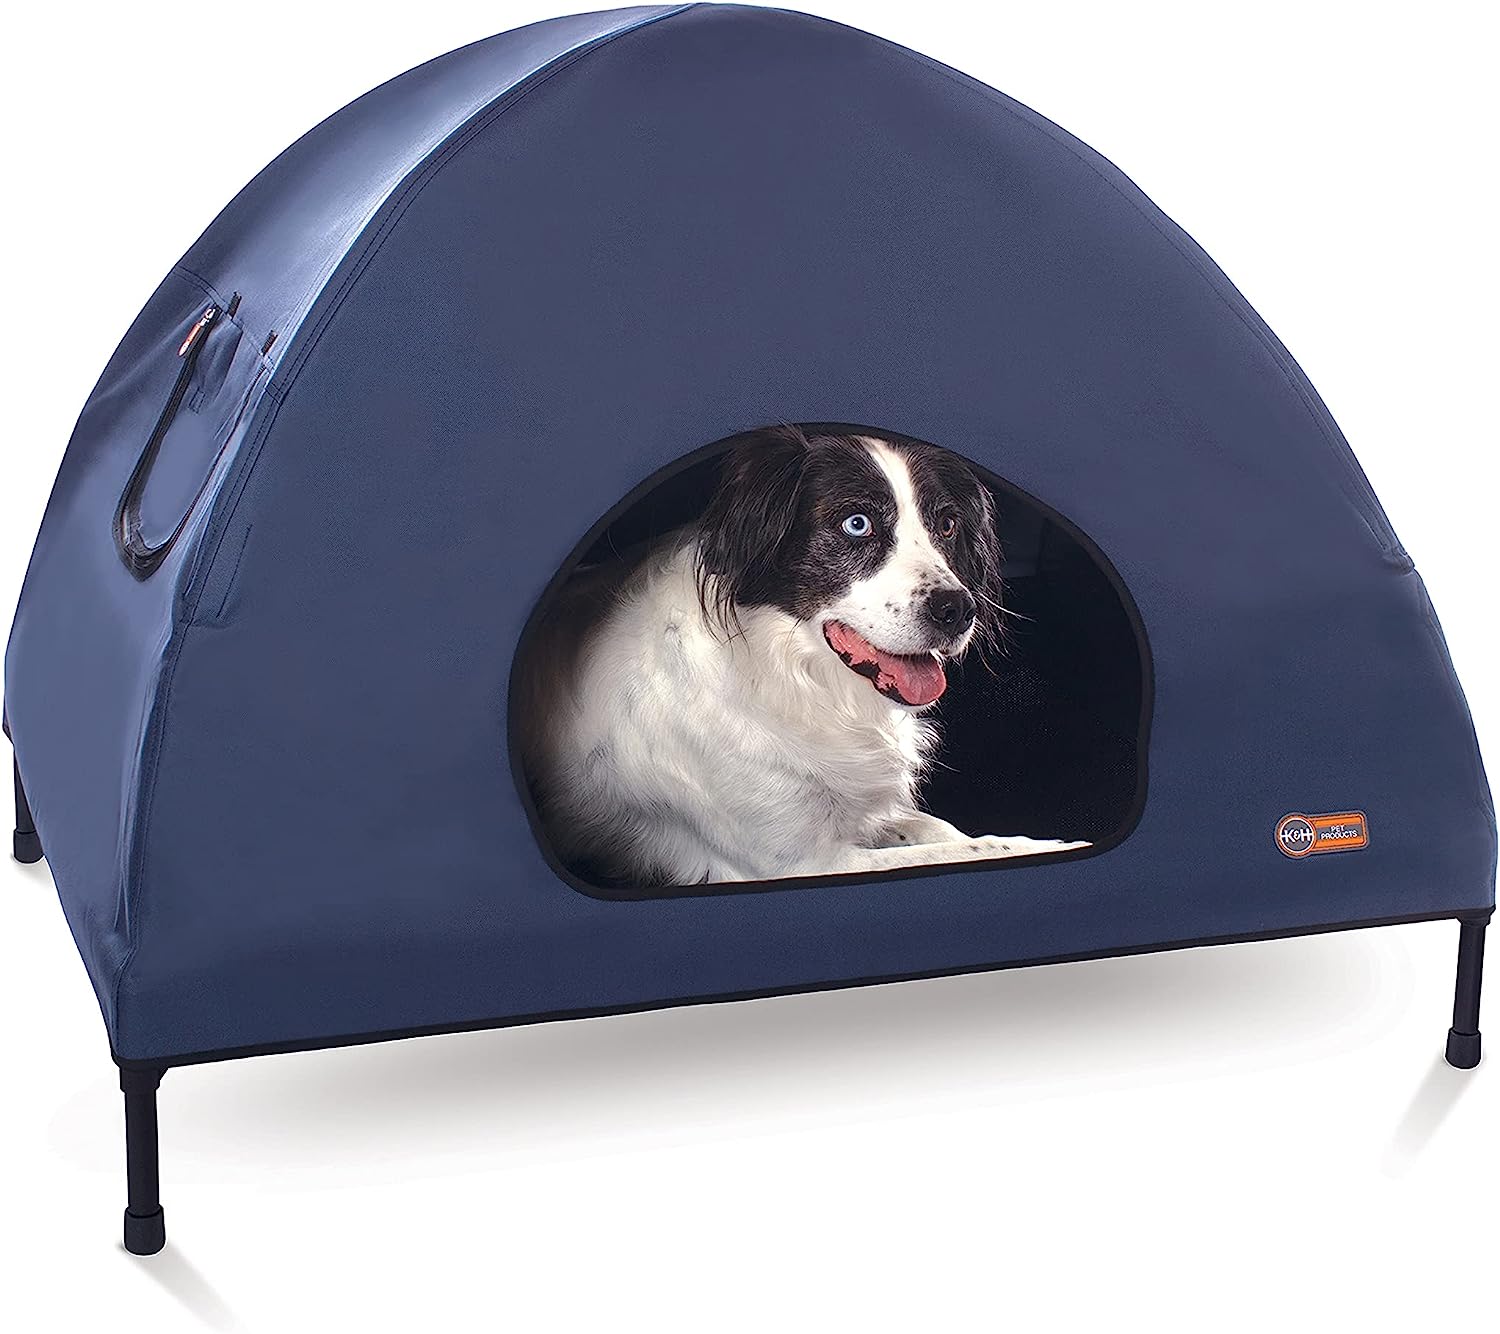 K&H Pet Products Original Pet Cot Tent